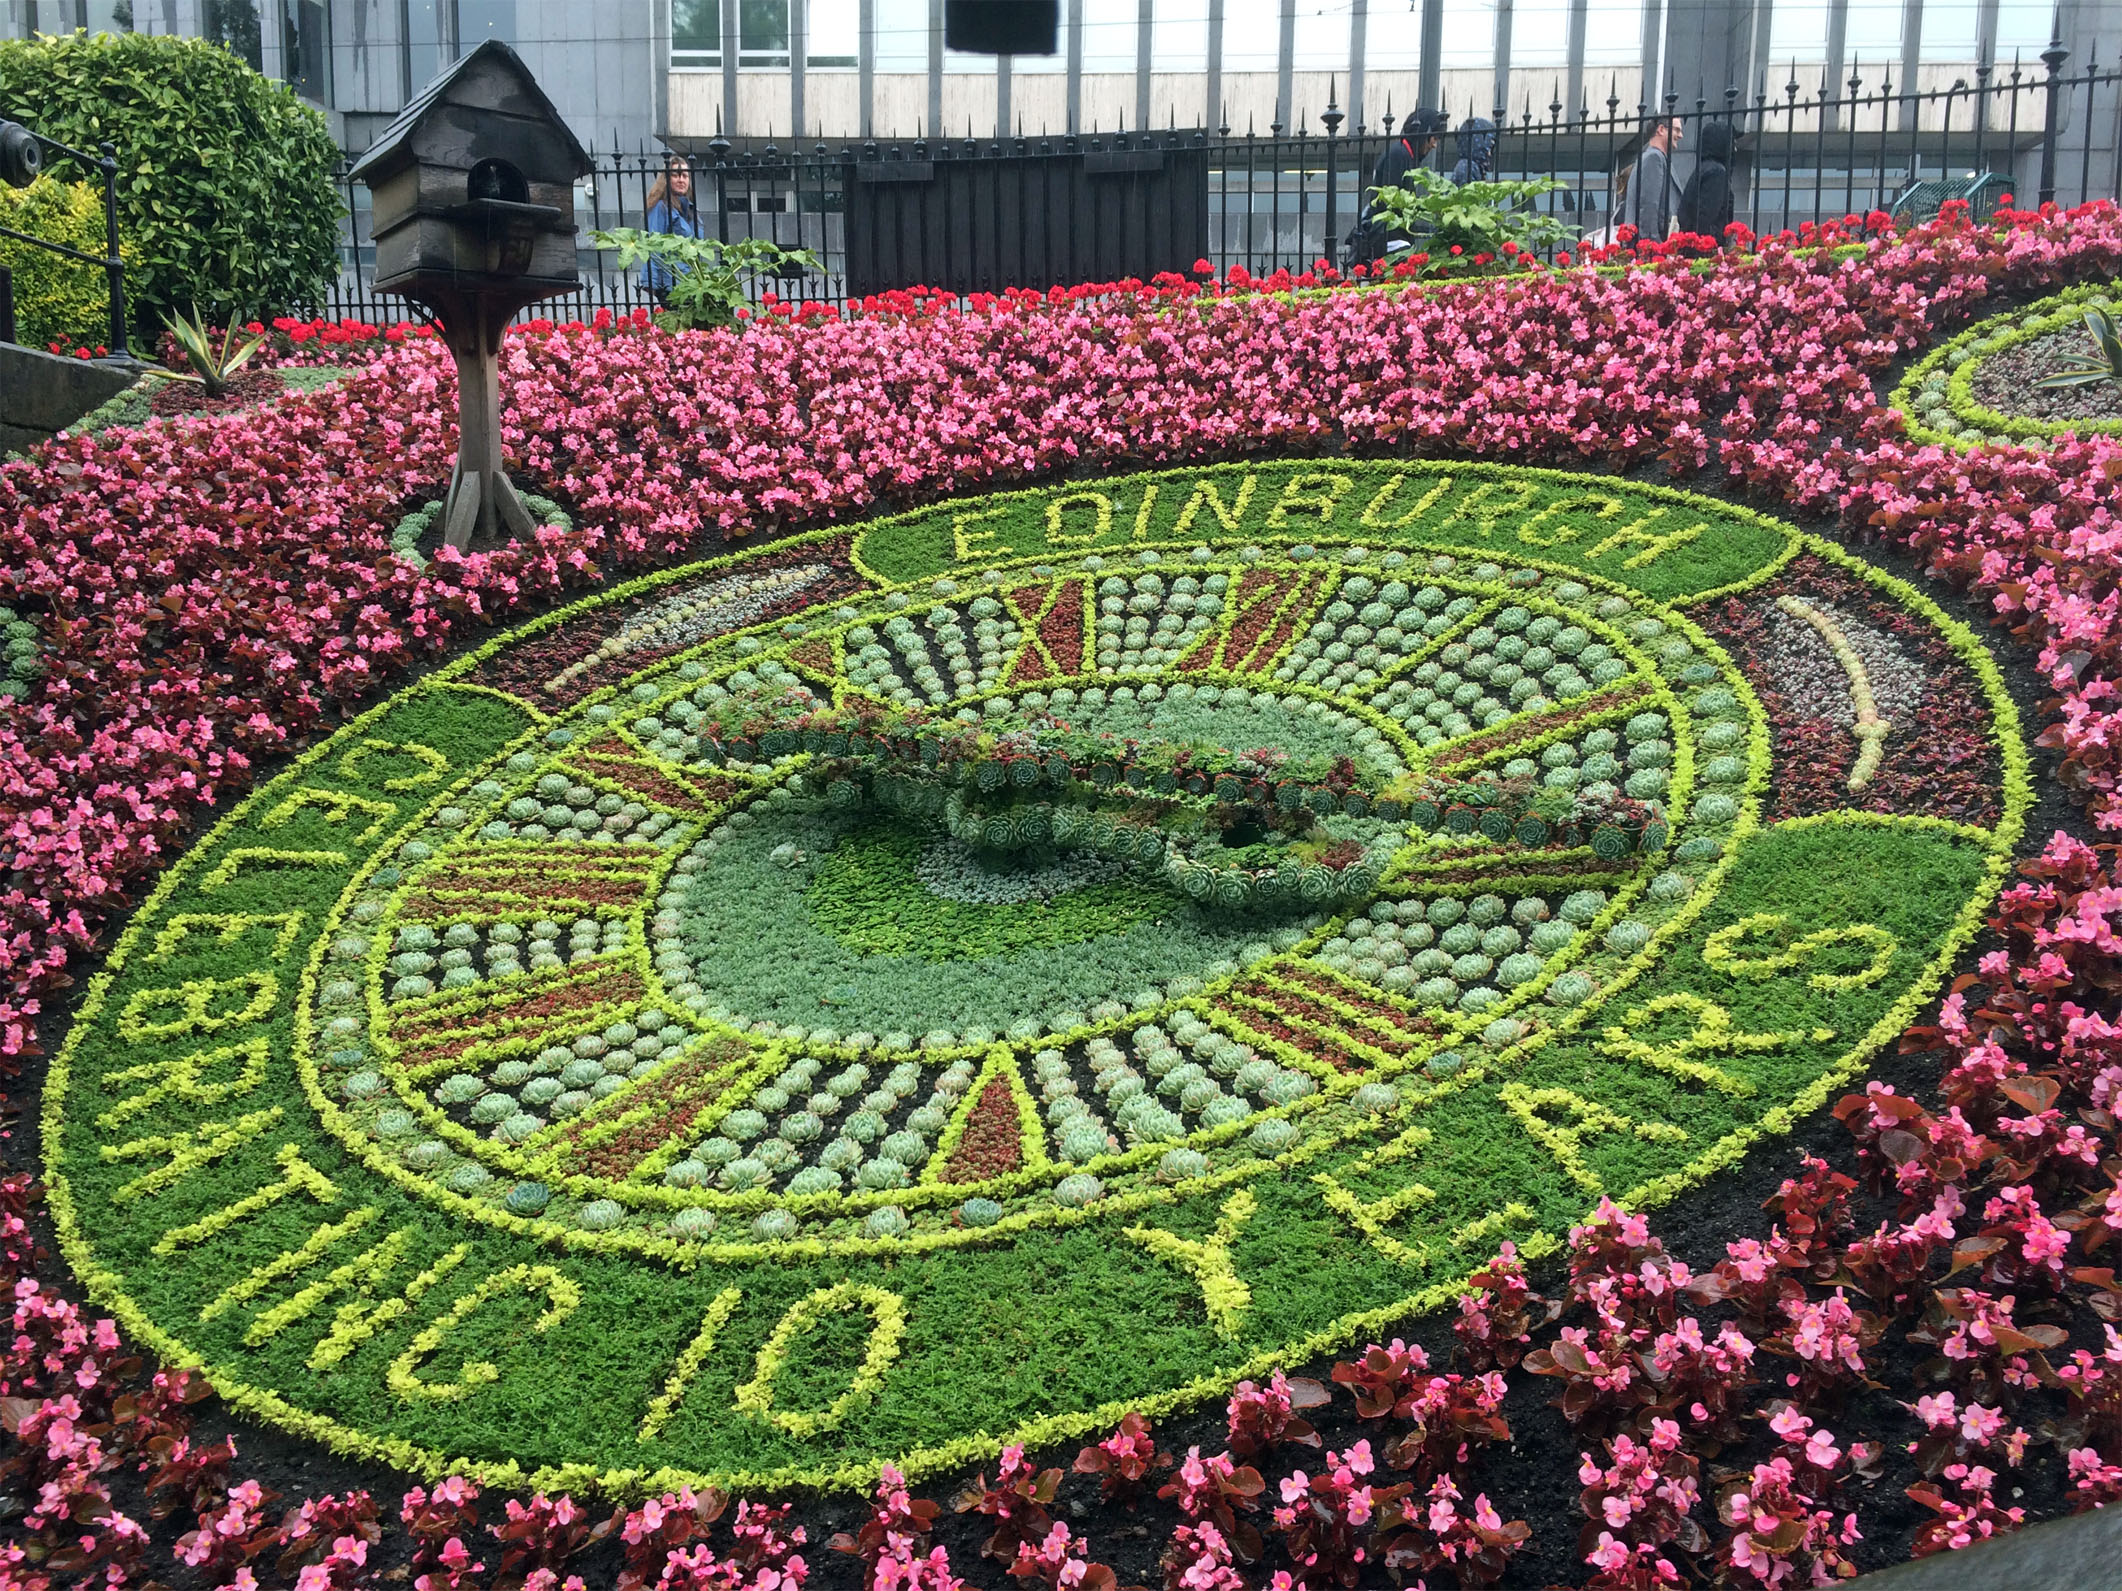 Edinburgh flower clock 2015